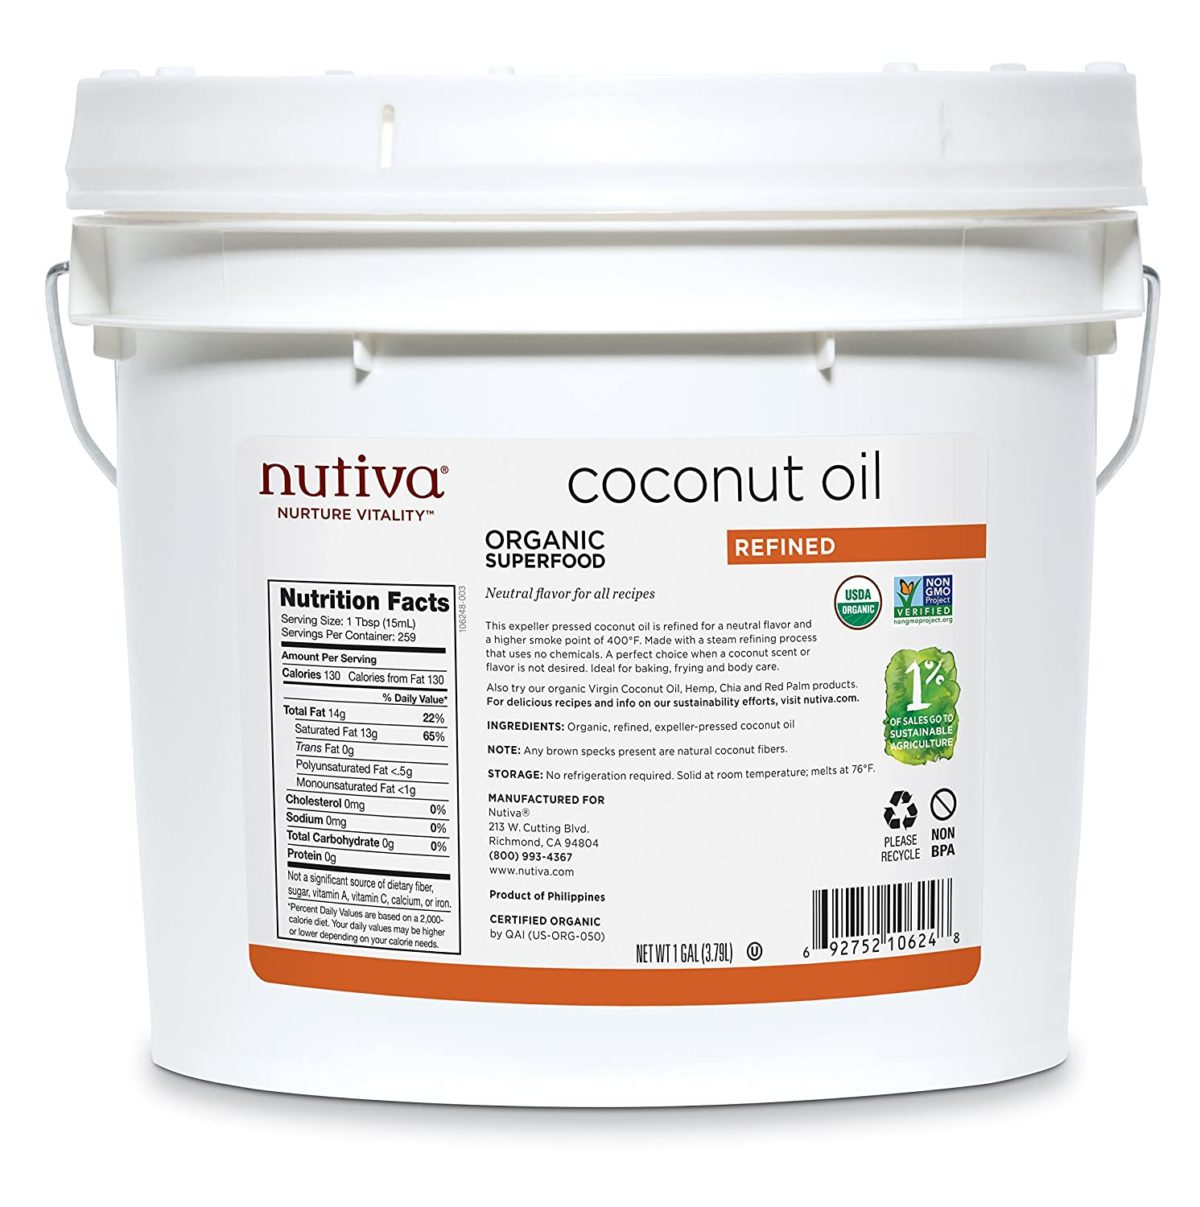 Nutiva organic, steam refined coconut oil from non-GMO, sustainably farmed coconuts